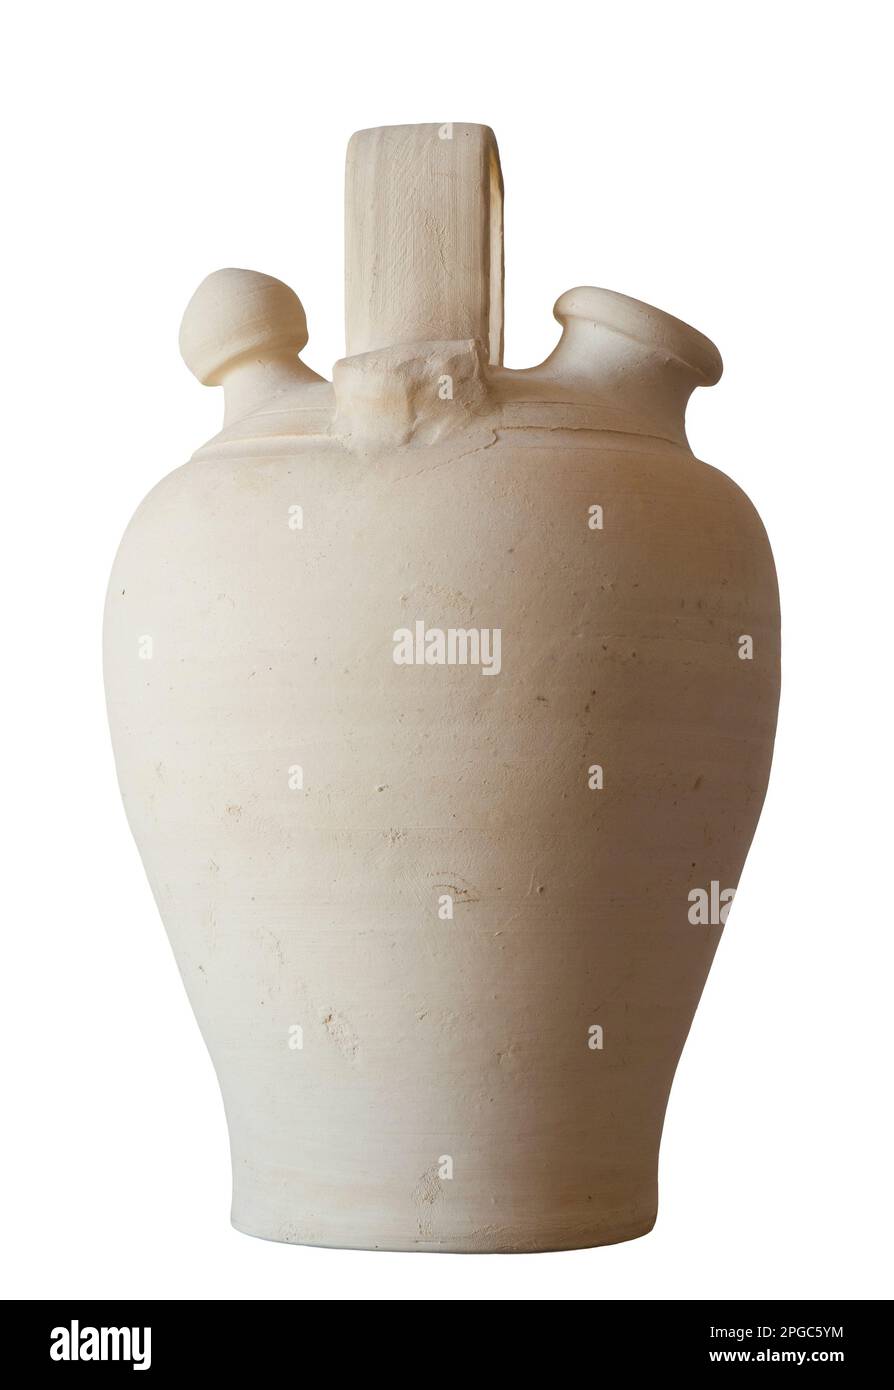 Weißes Steingut botijo, traditionelle Tontopf-Kanne für frisches Wasser. Isoliert über weiß Stockfoto